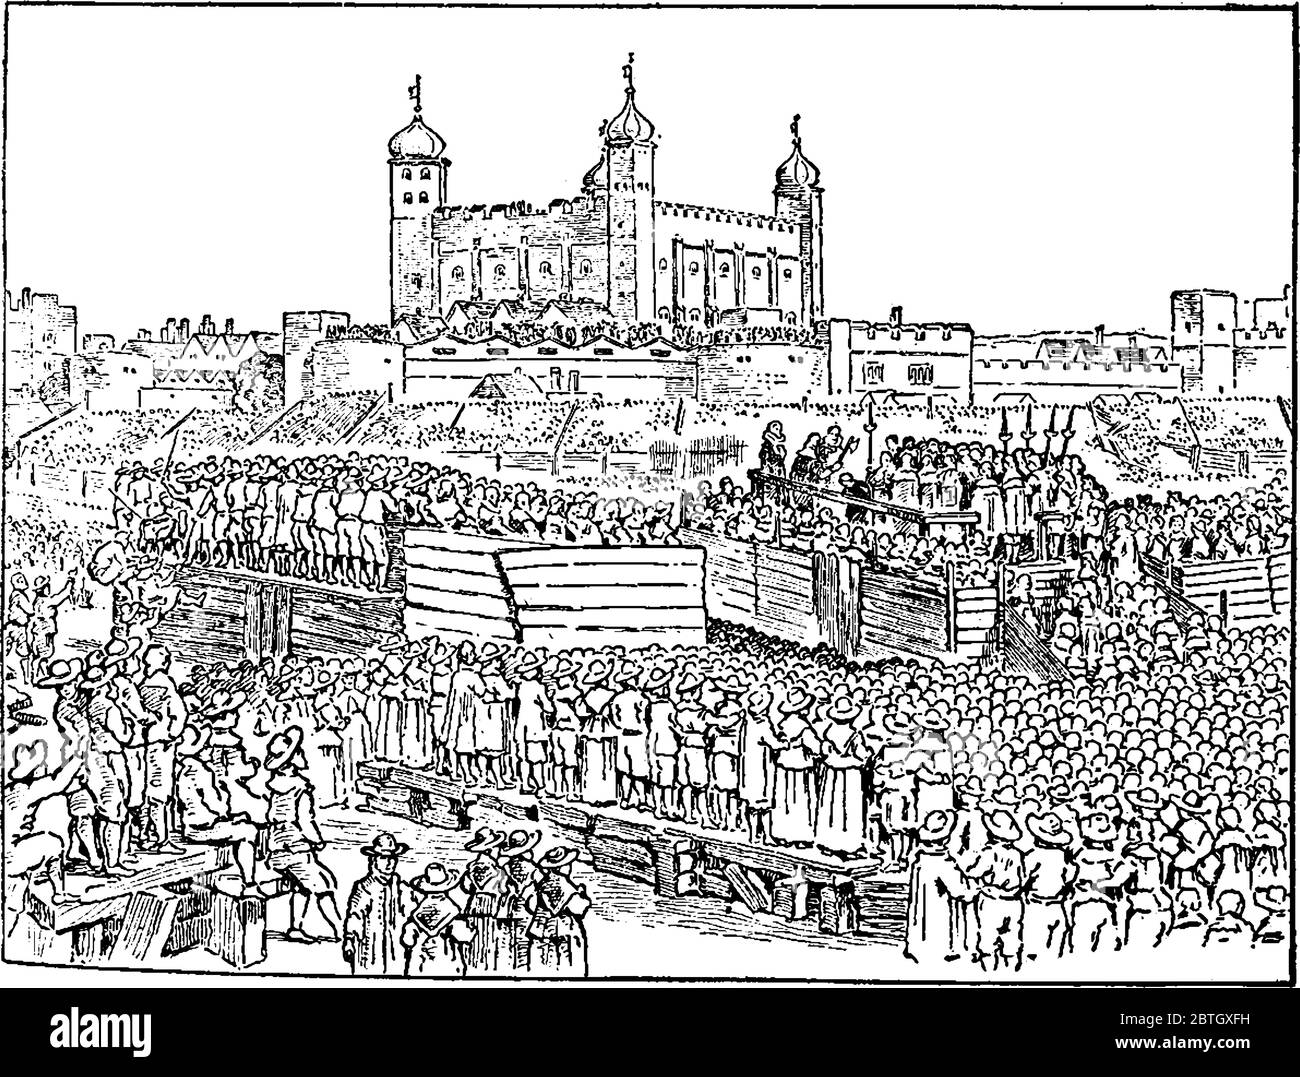 Große Menschenansturm während der Erregung des earl of Strafford, Vintage-Strichzeichnung oder Gravur Illustration. Stock Vektor